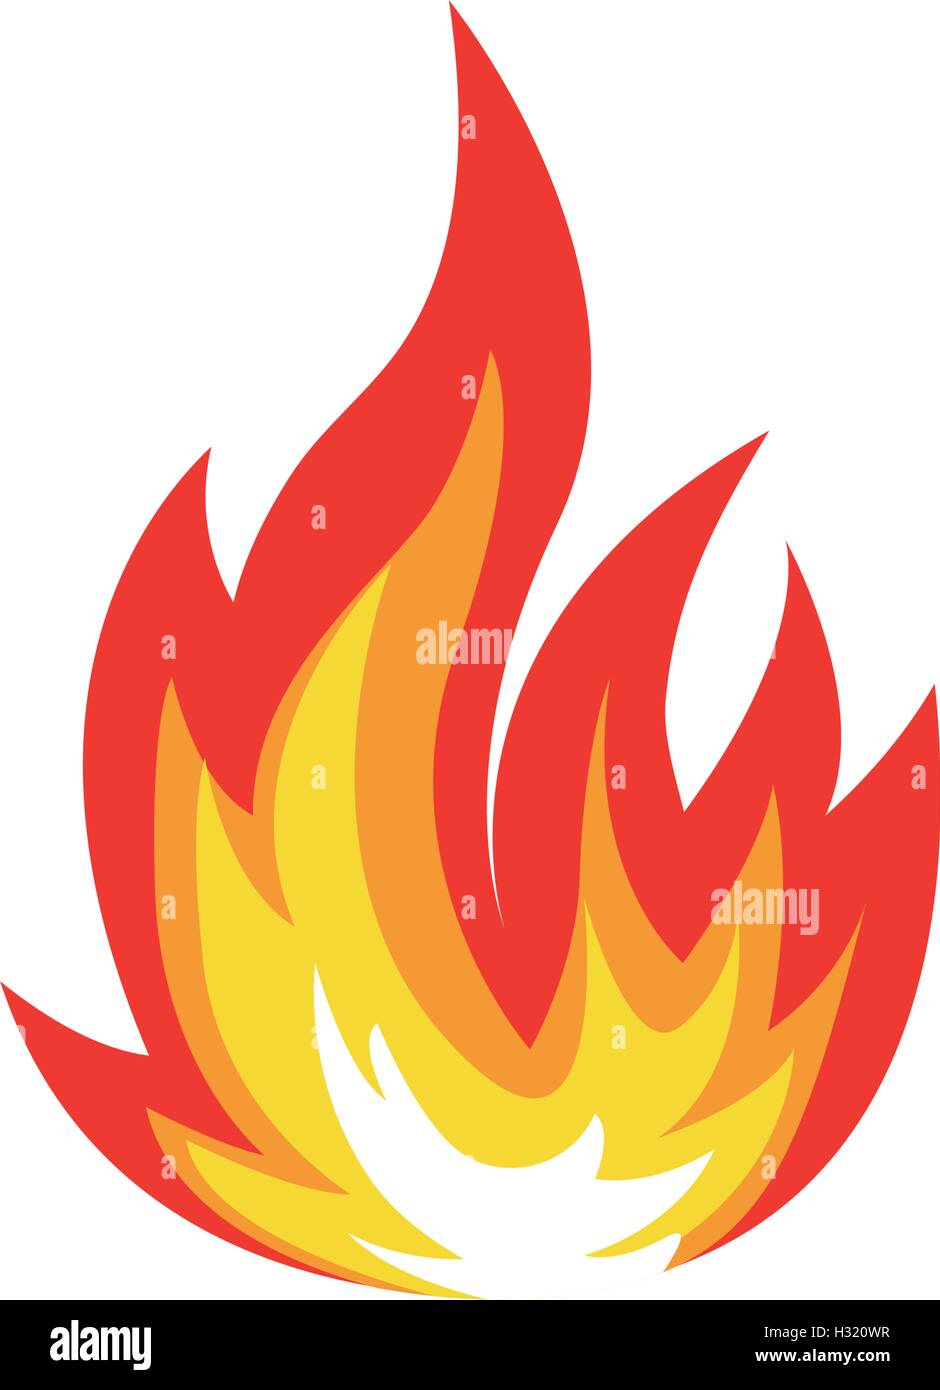 Abstrakt rot-orange Farbe Feuer Flamme Logo auf weißem Hintergrund isoliert. Lagerfeuer-Logo. Scharfes Essen-Symbol. Hitze-Symbol. Heiße Energie Zeichen. Vektor-Illustration. Stock Vektor